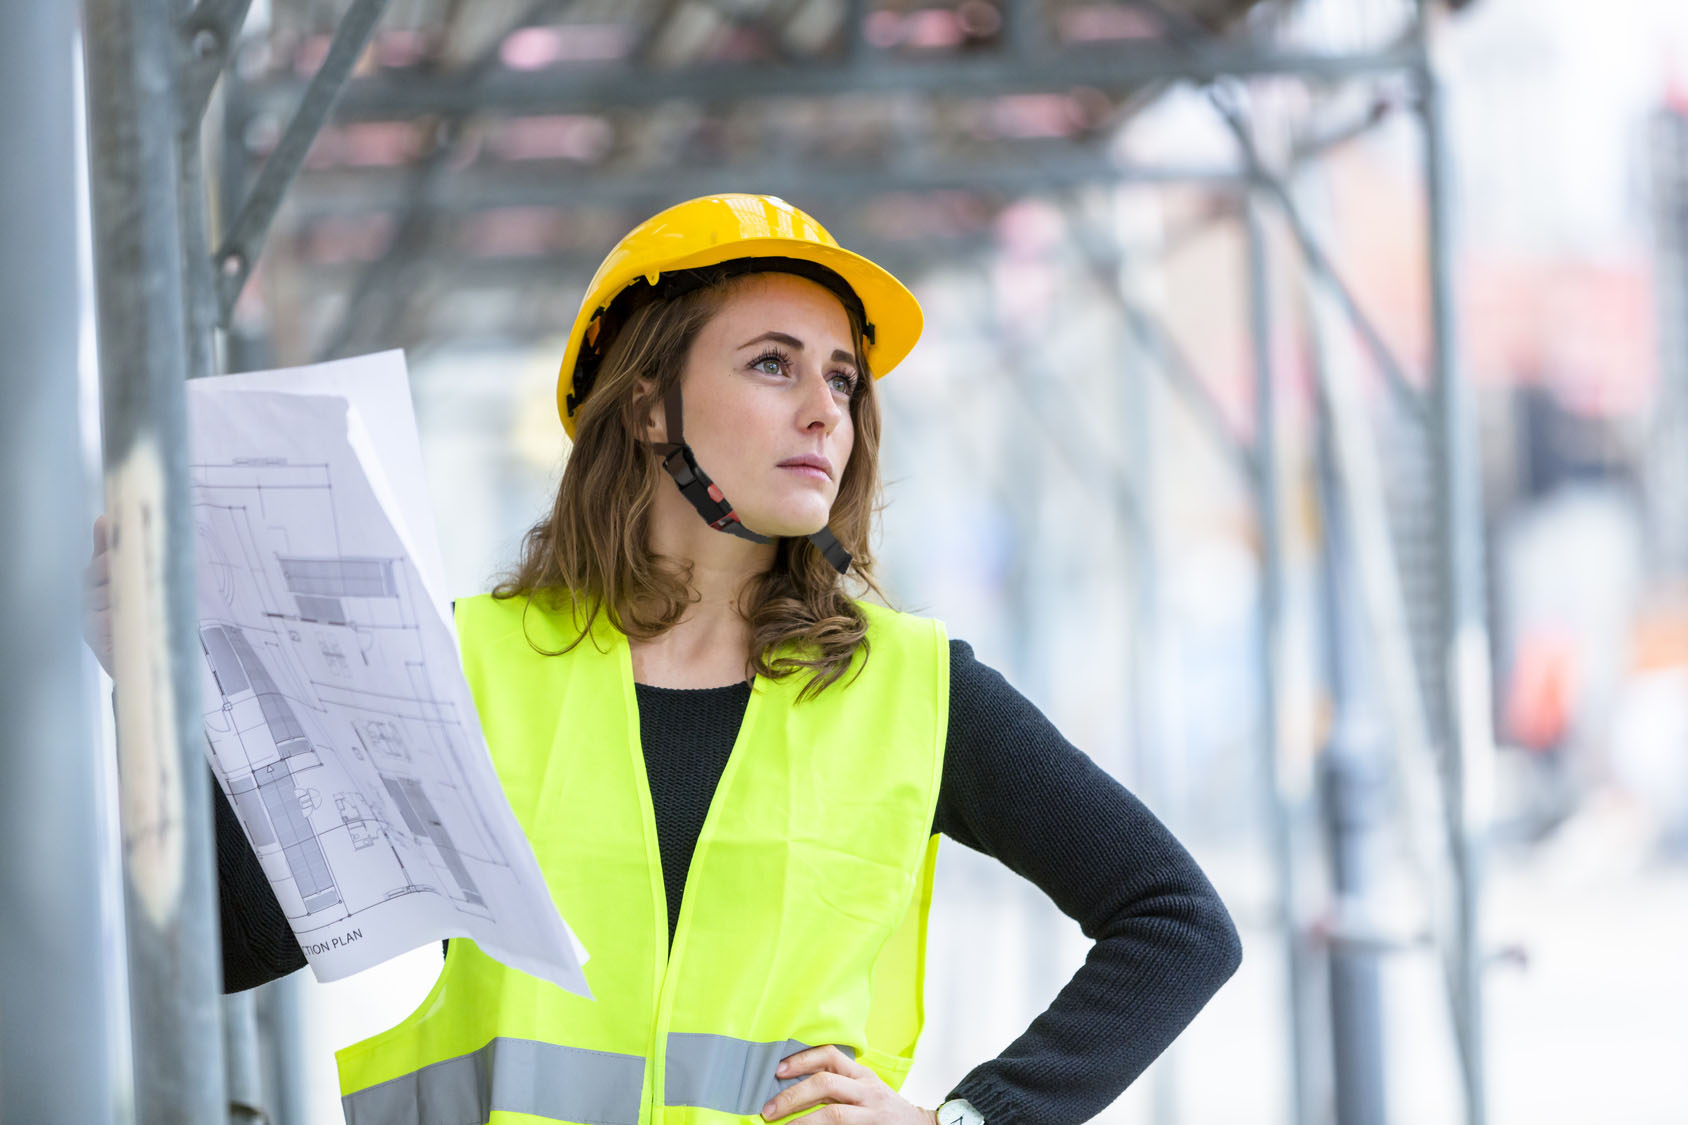 Ein Porträt einer Bauleiterin, die mit persönlicher Schutzausrüstung wie Schutzhelm und Warnweste auf einer Baustelle steht.